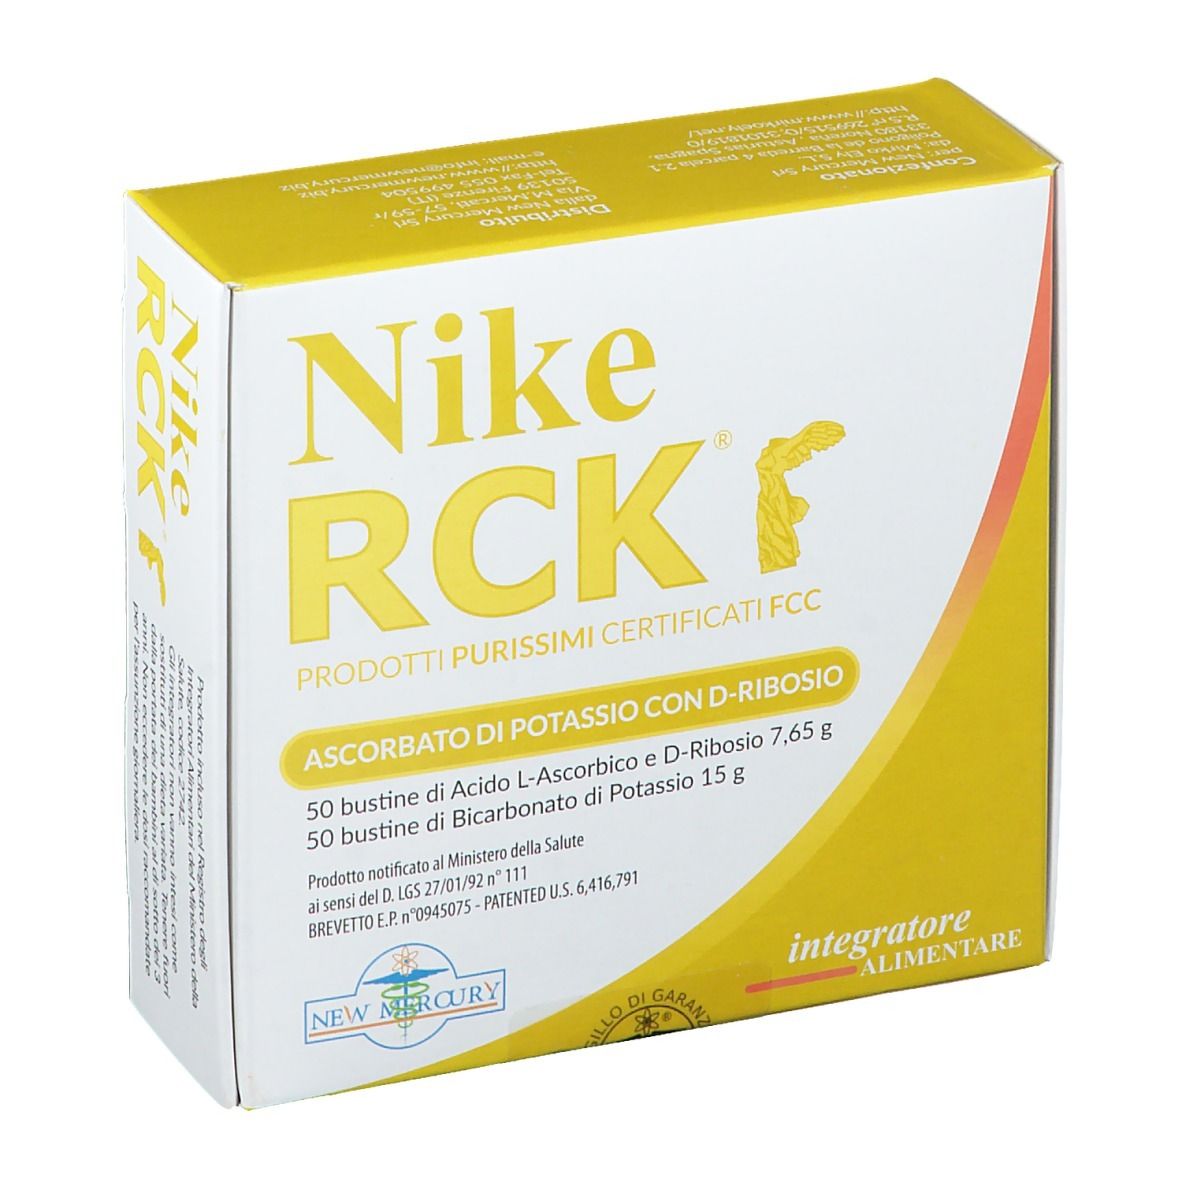 Nike RCK®